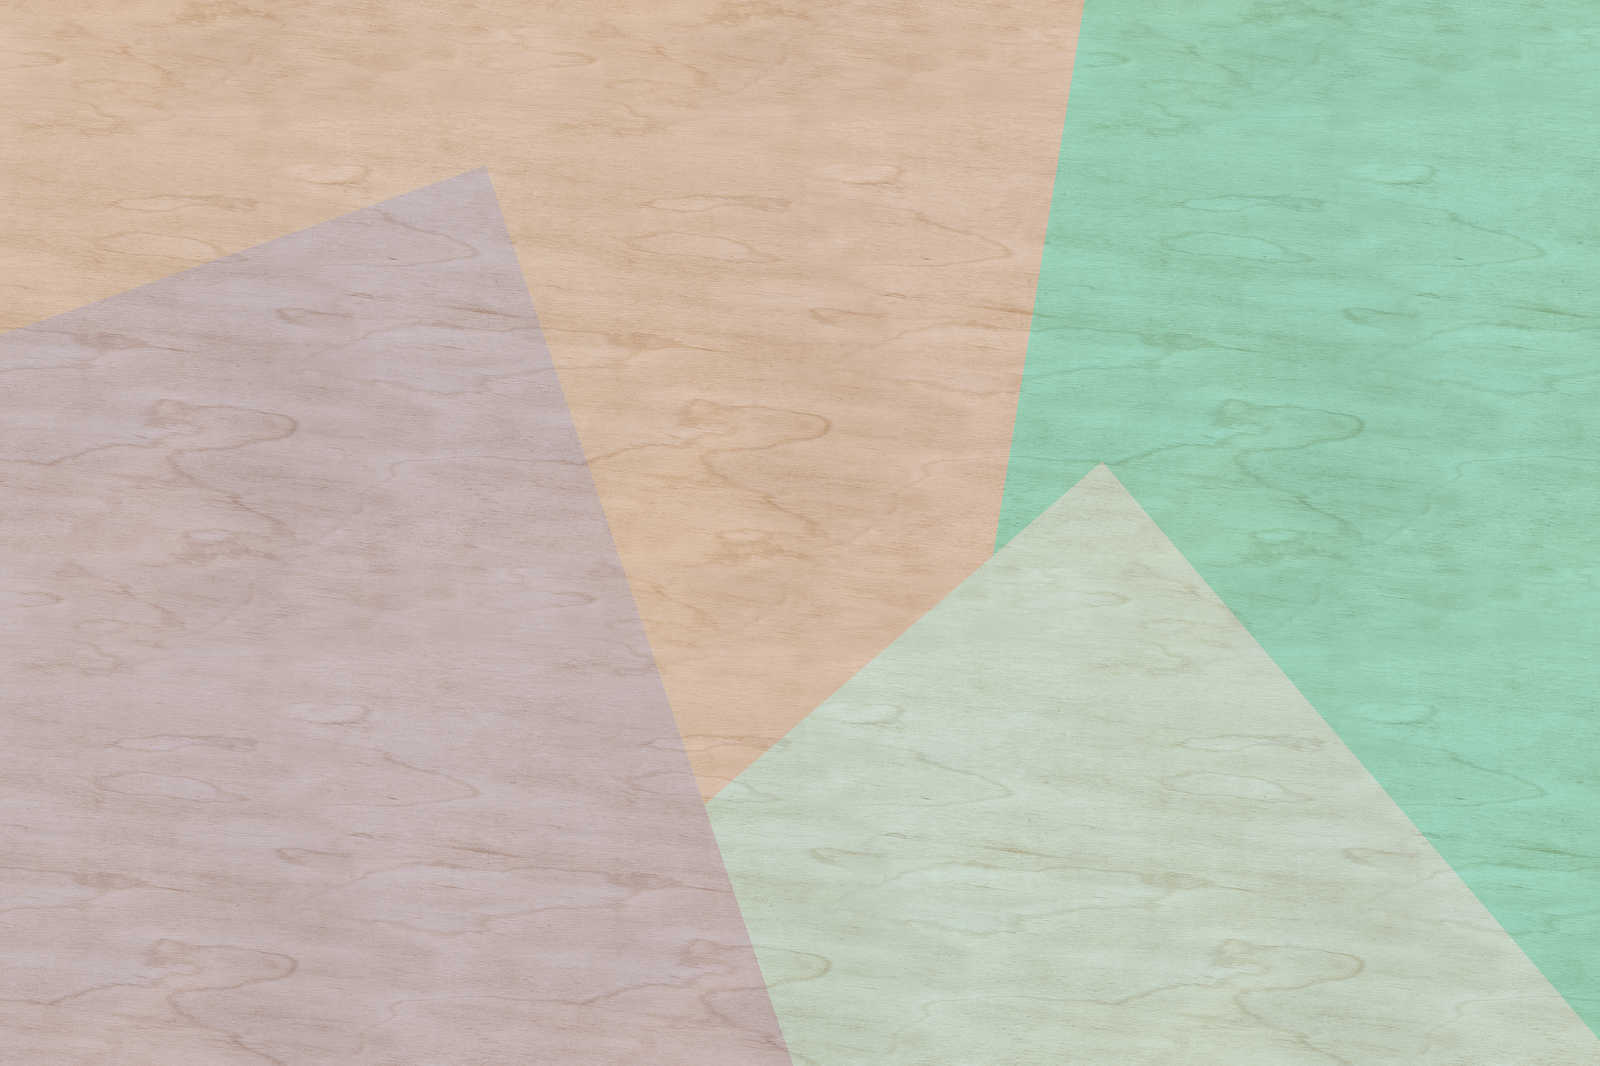             Inaly 1 - Lienzo abstracto y colorista con aspecto de contrachapado - 0,90 m x 0,60 m
        